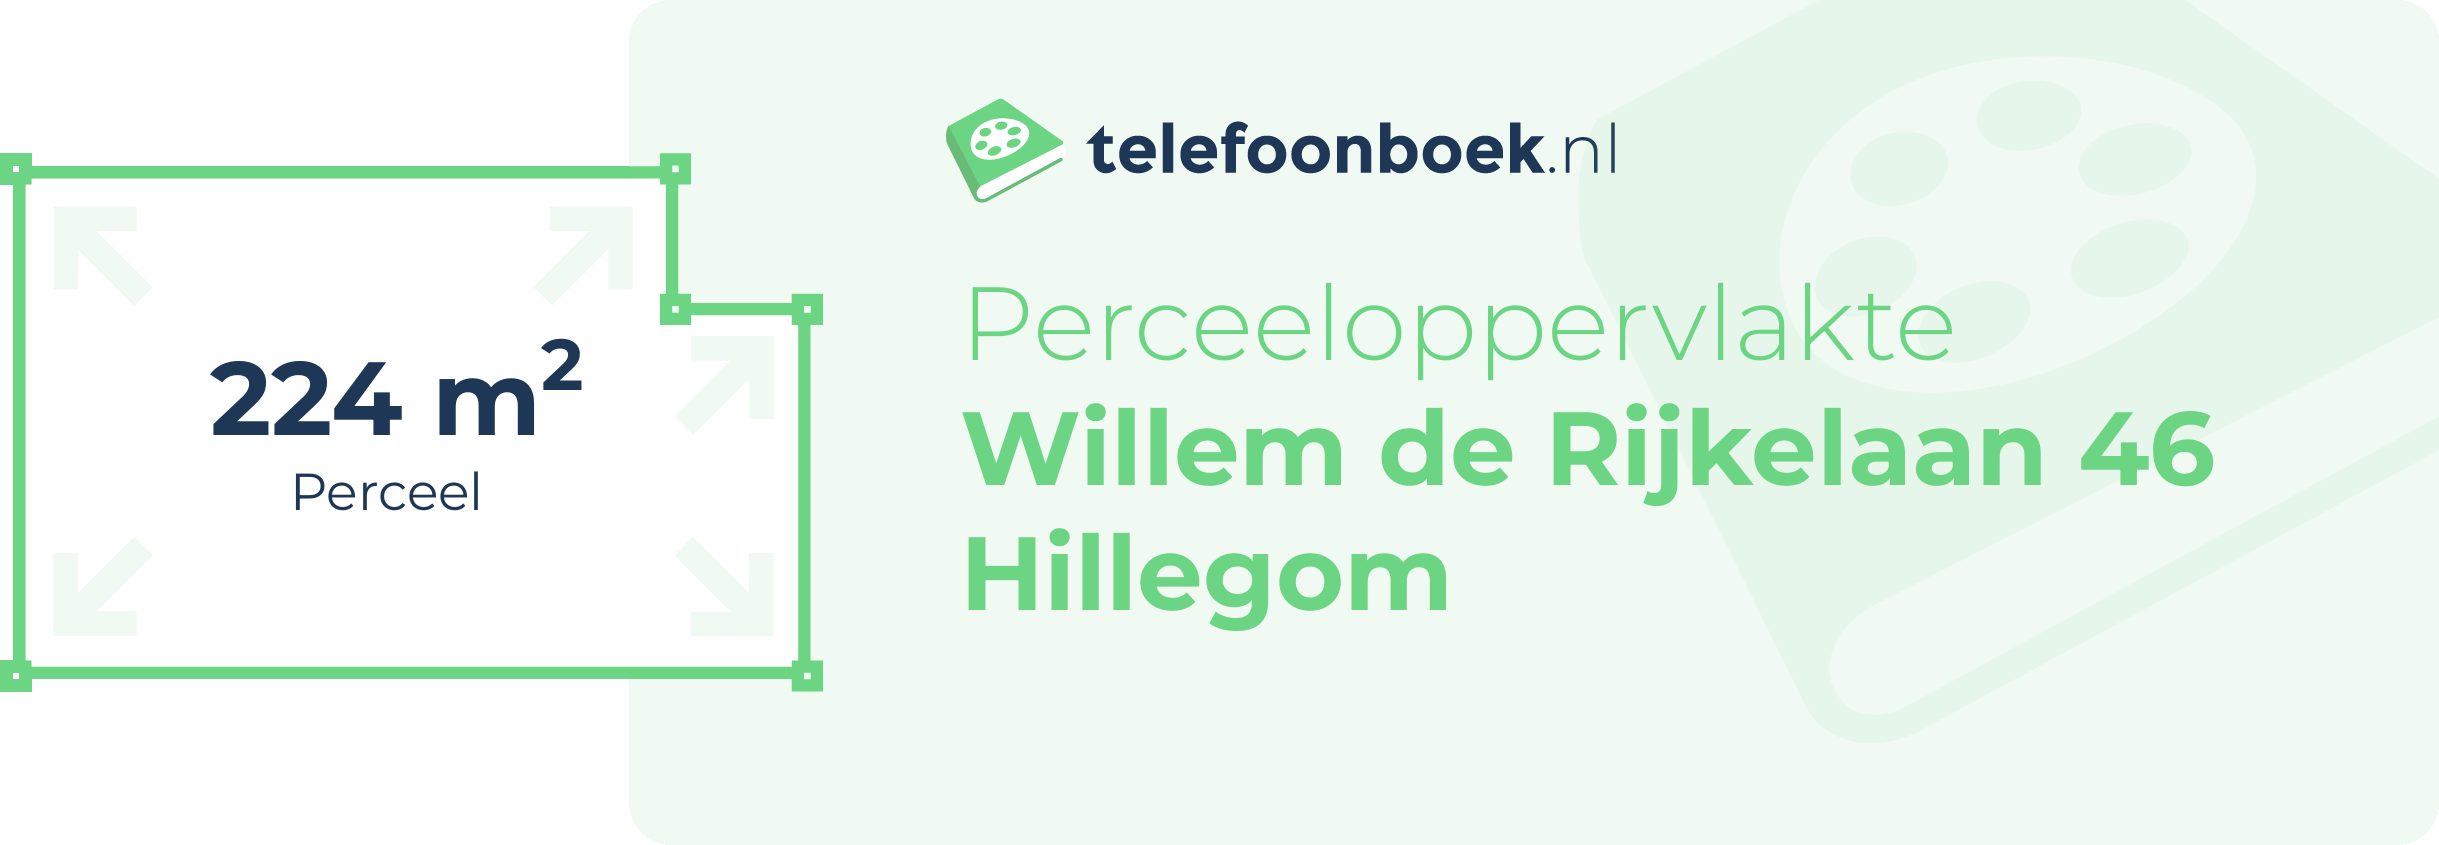 Perceeloppervlakte Willem De Rijkelaan 46 Hillegom